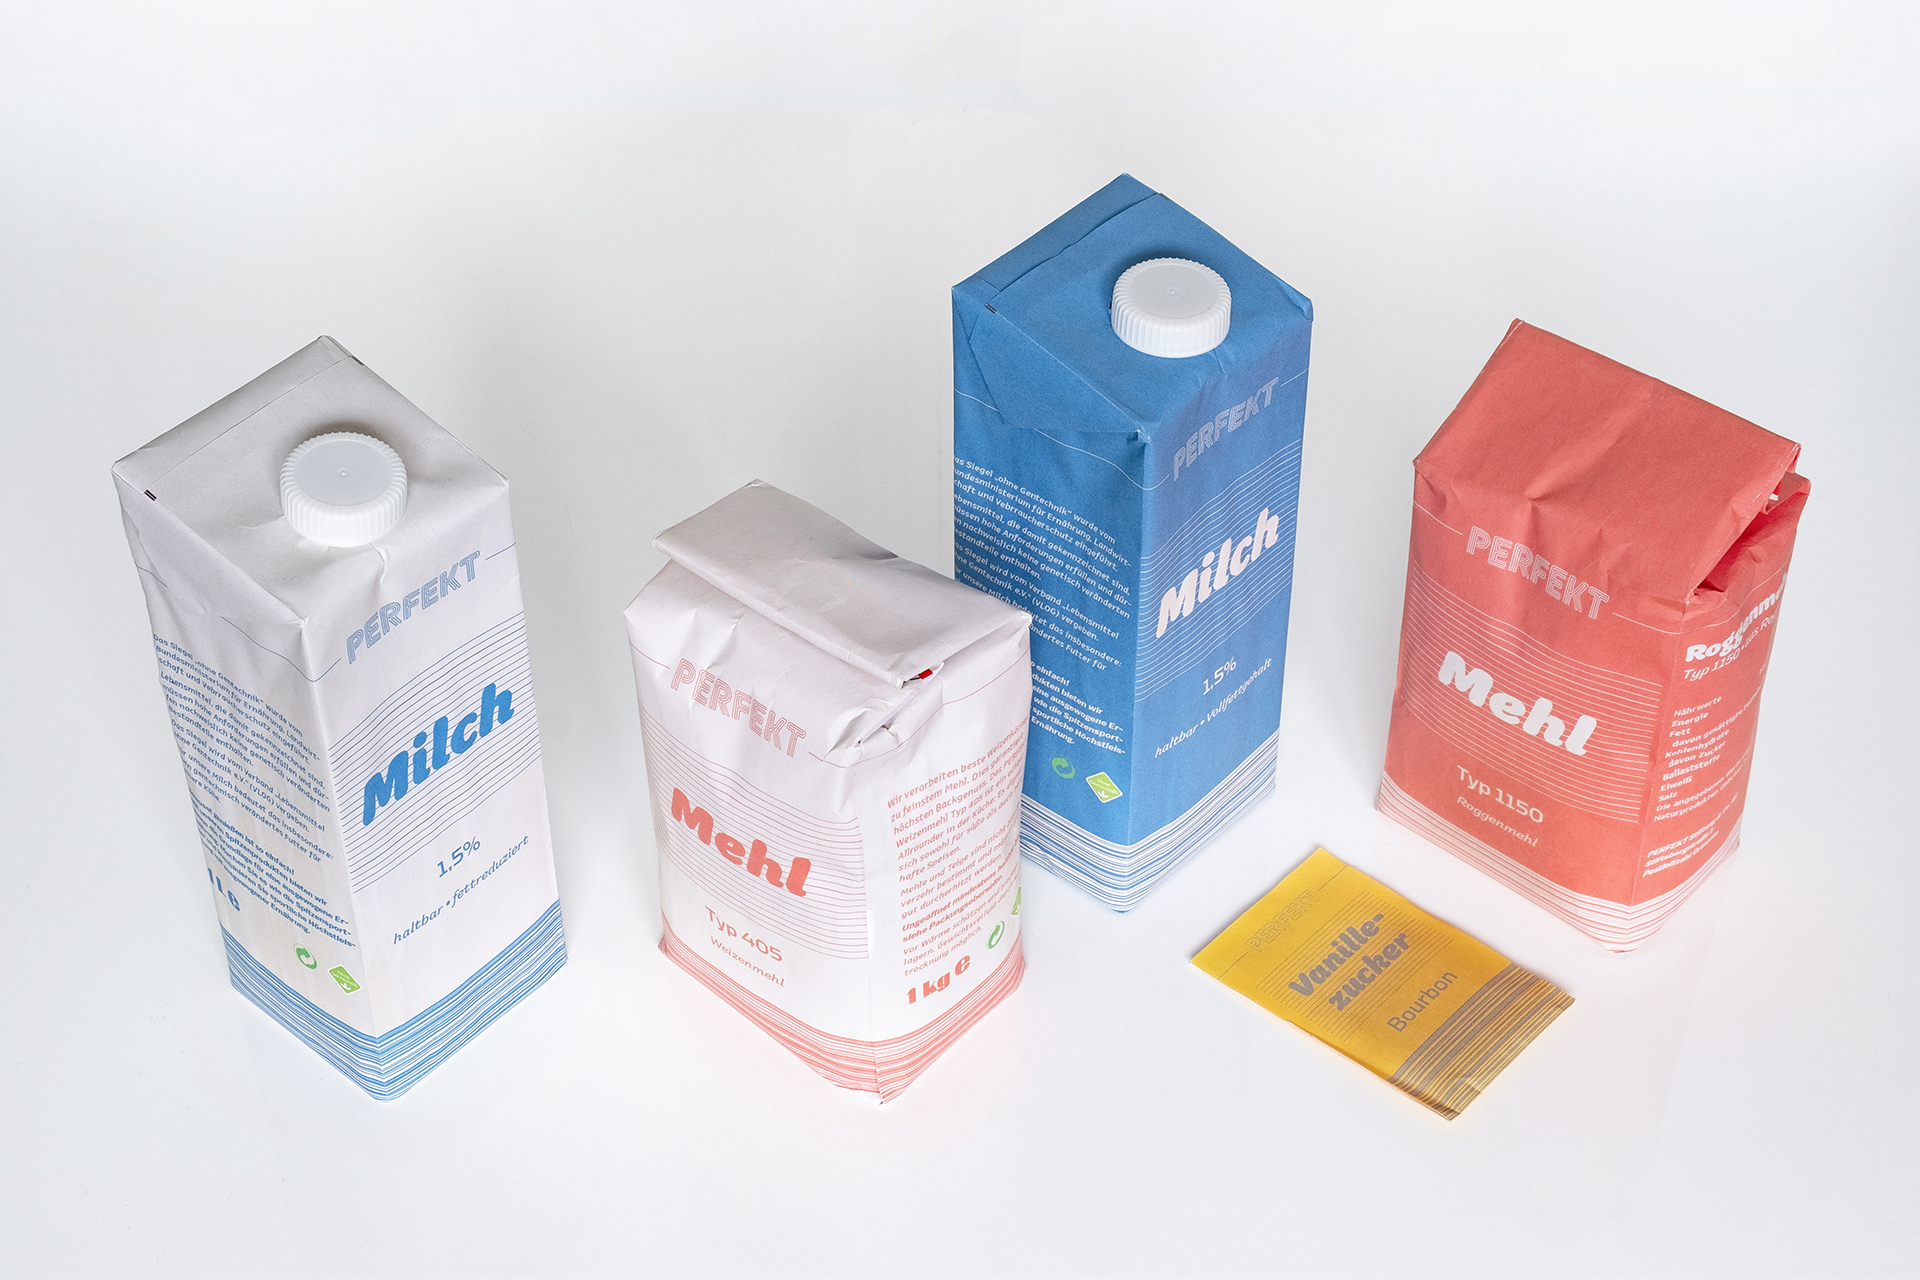 Eigenmarke Supermarkt Brand Branding Packaging, Sebastian Knöbber